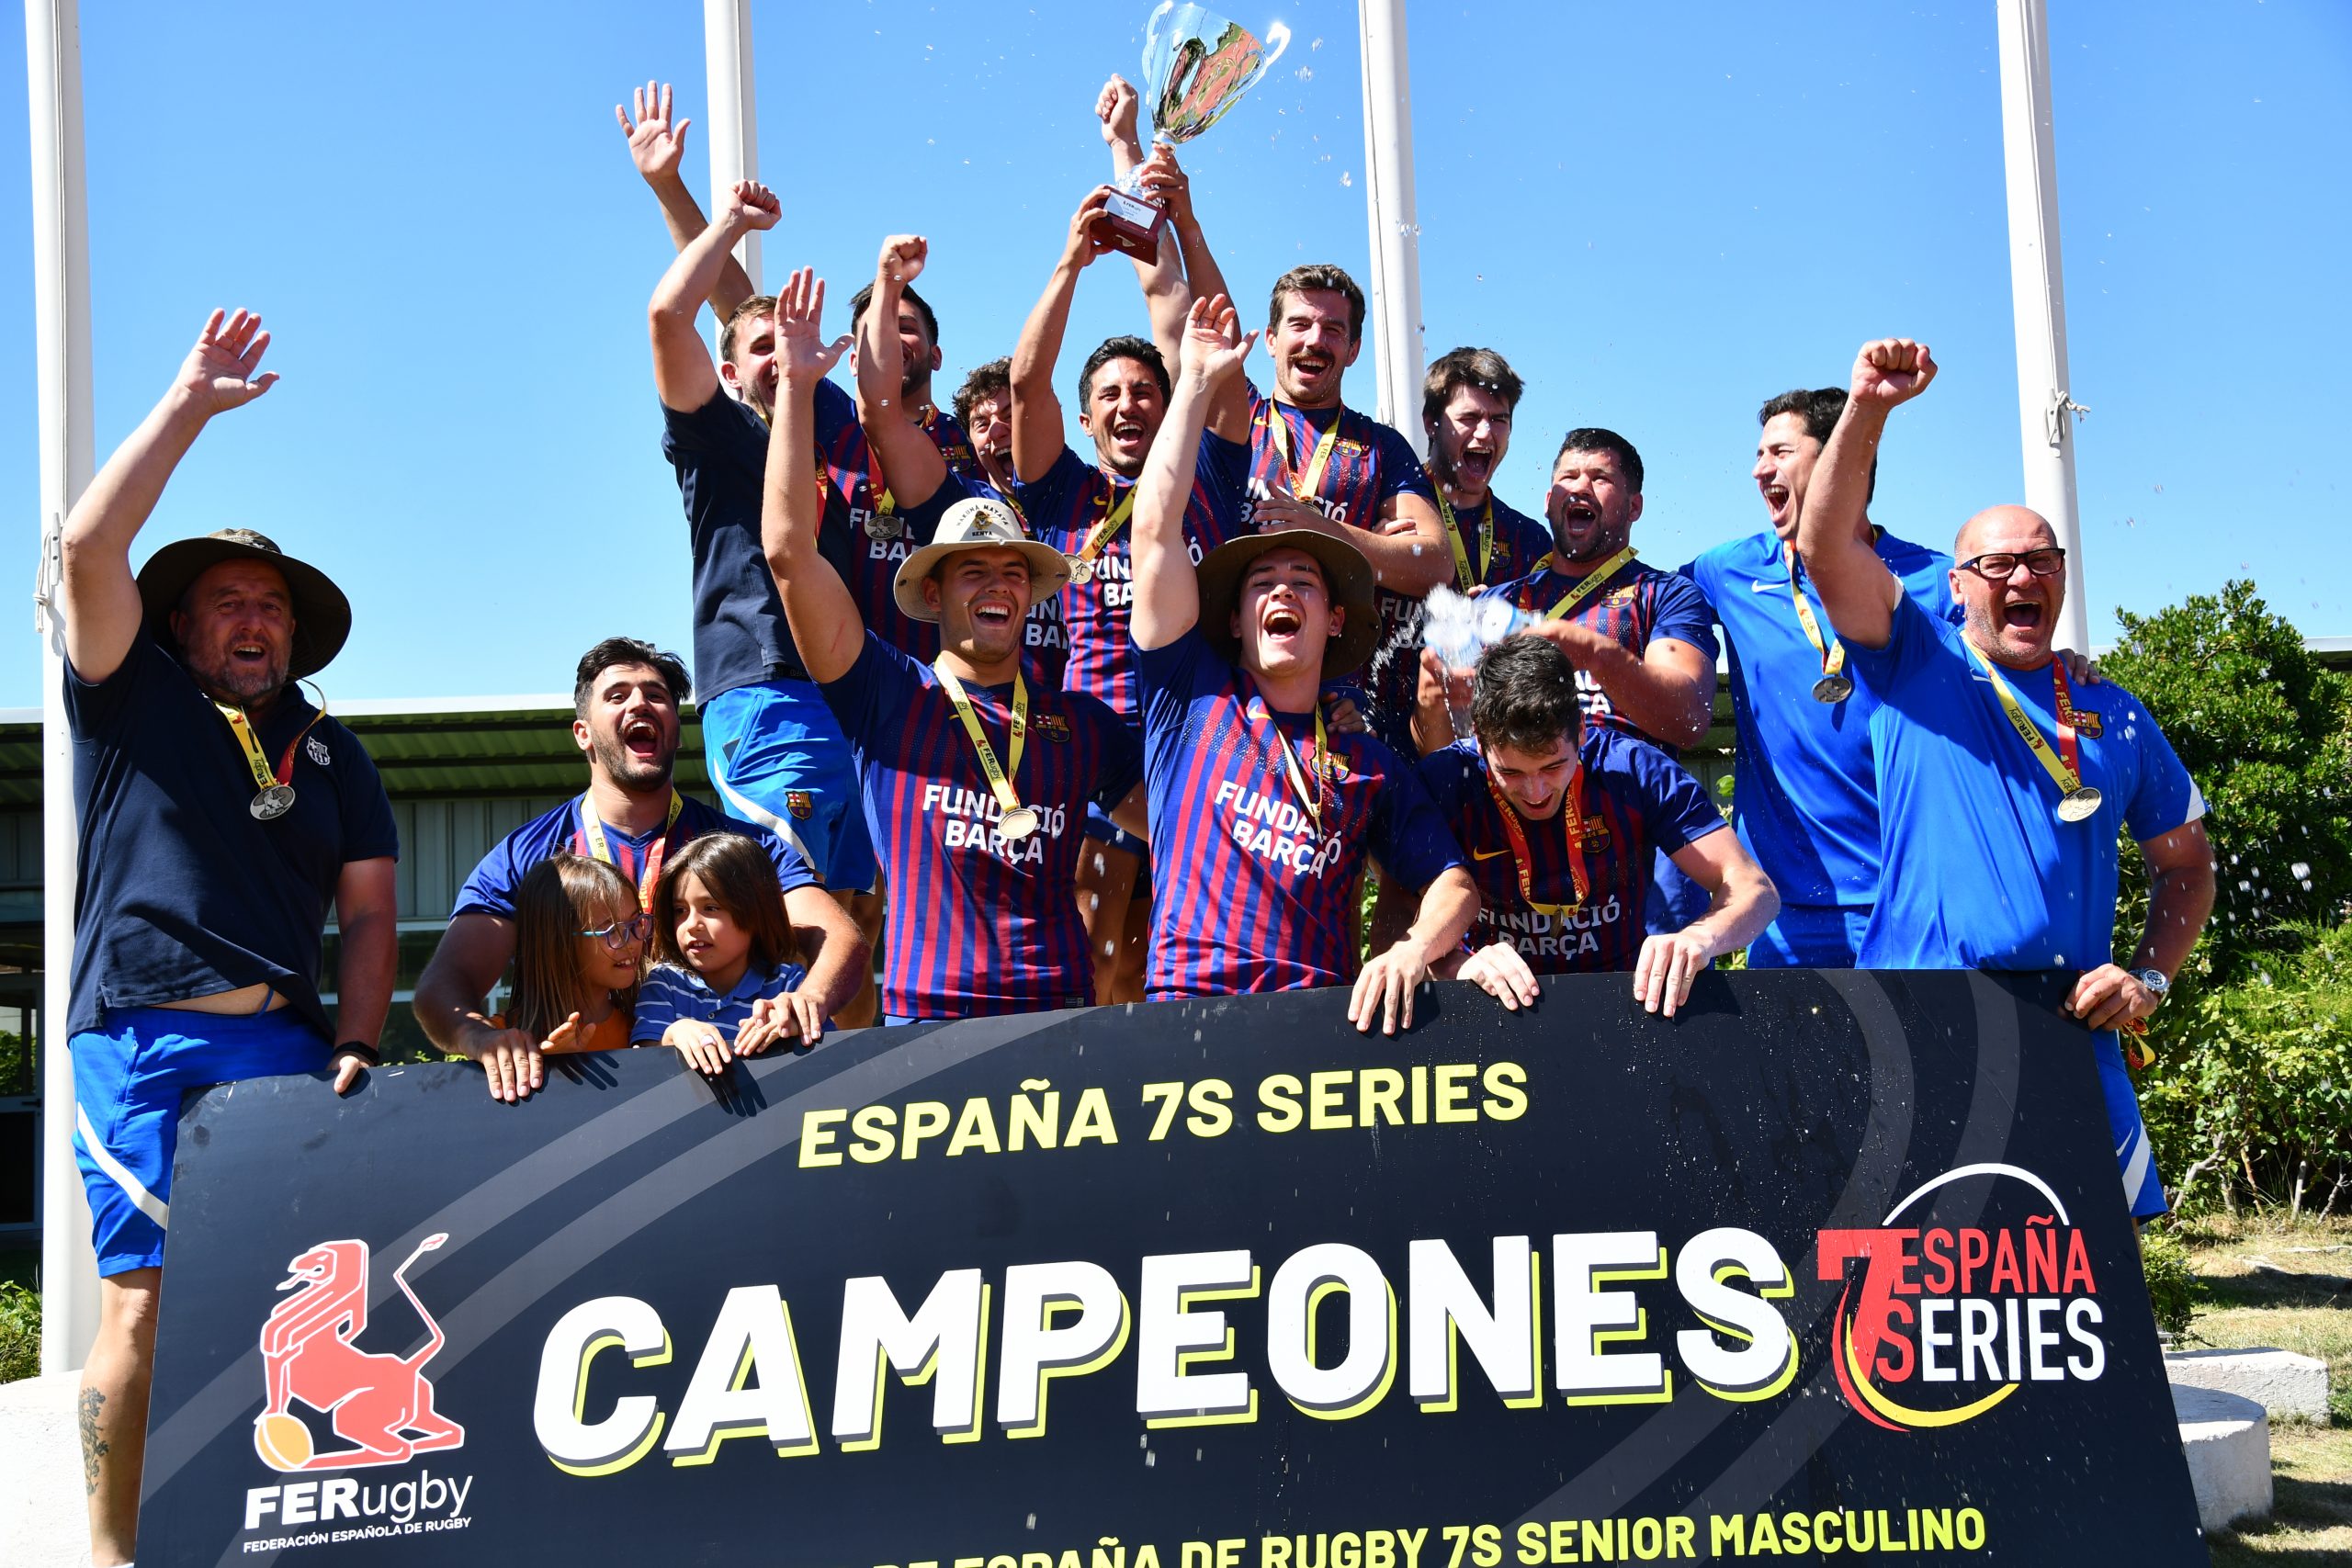 El Barça, nuevo campeón de las España 7s Series tras derrotar a El Salvador